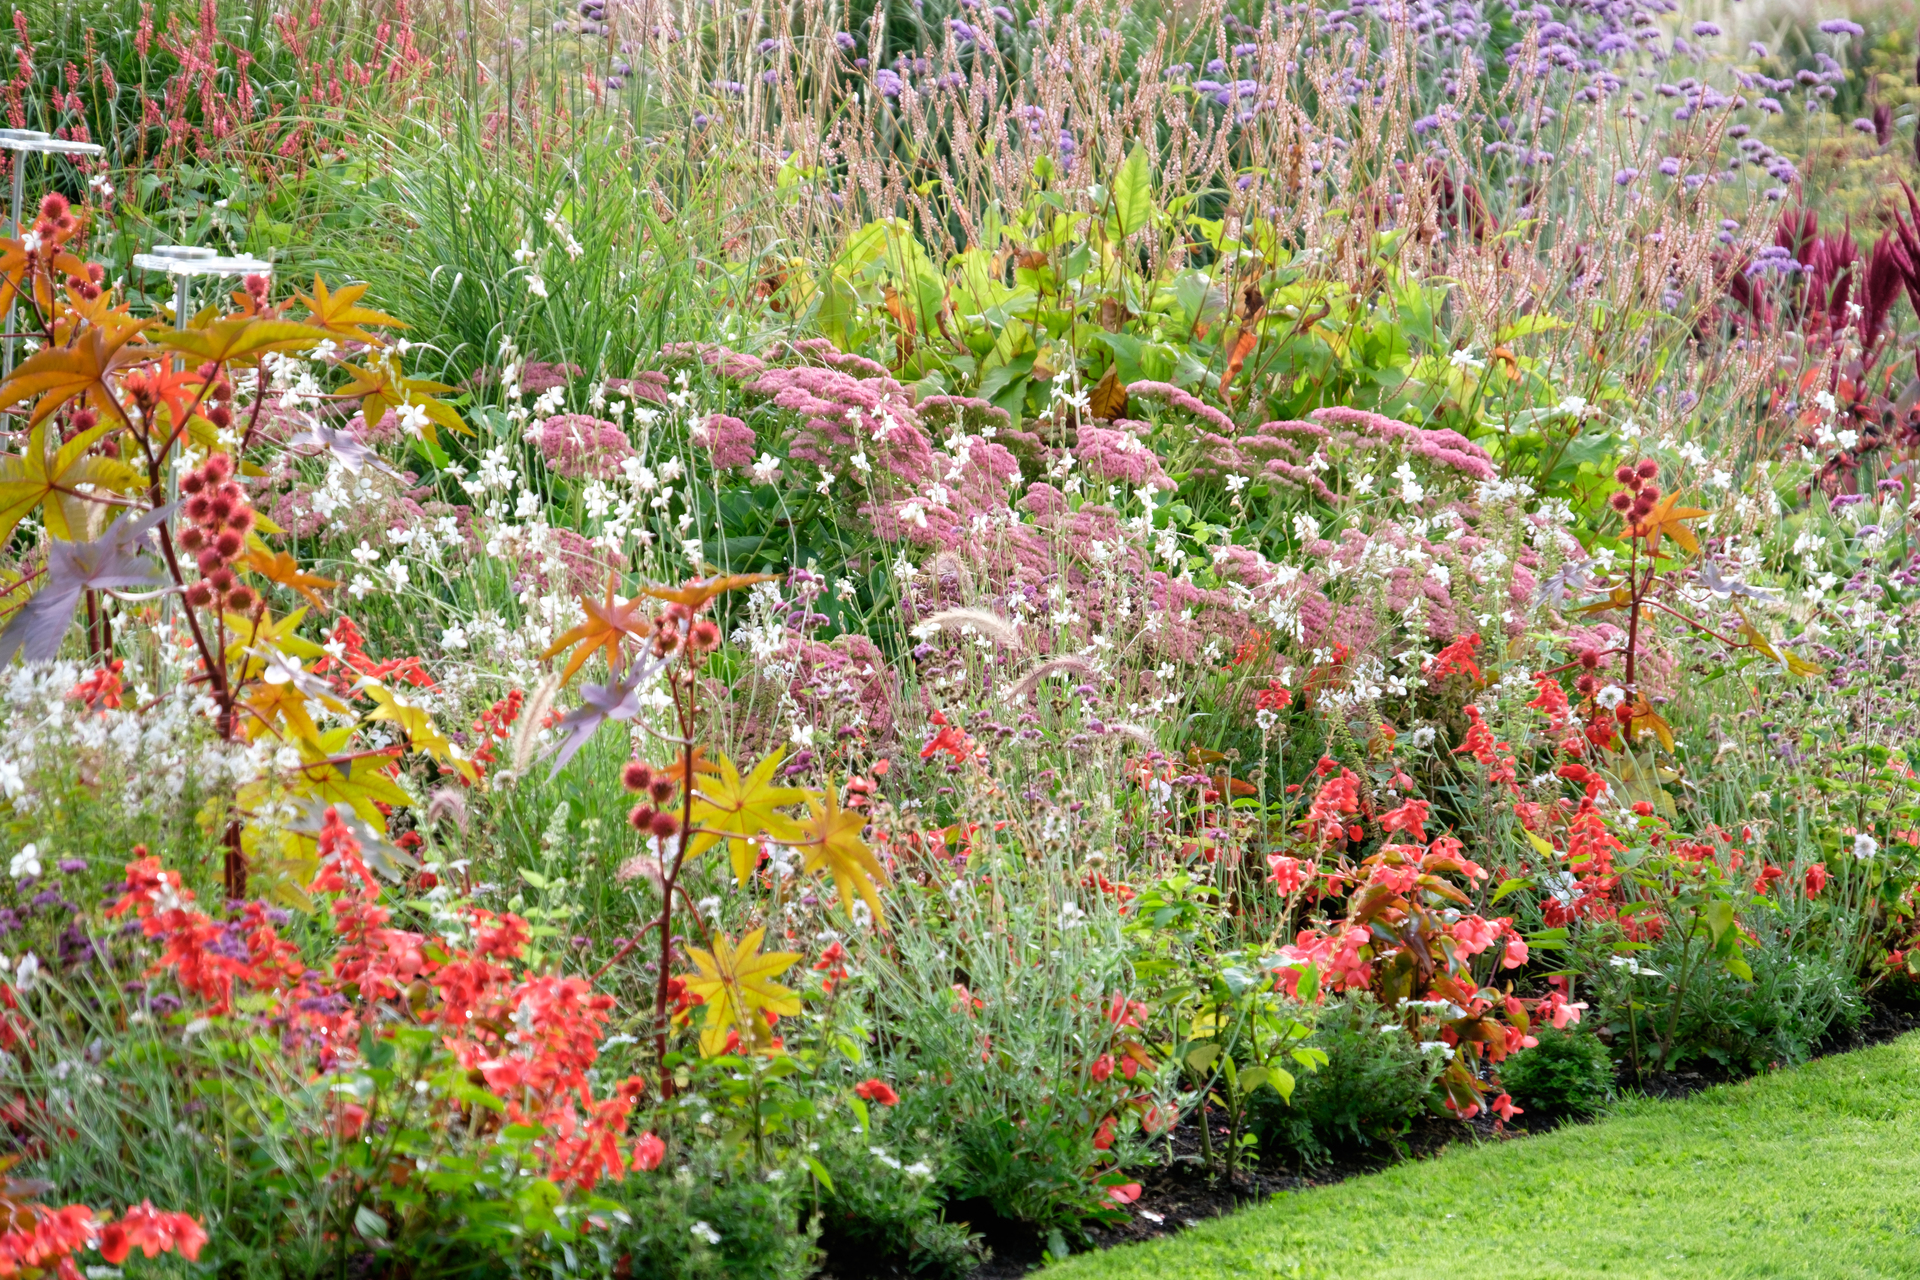 Na tym ujmującym obrazku możemy podziwiać malowniczy ogród klasyczny, który ożywiają kolorowe kwiaty w pełnym rozkwicie. Wśród eleganckich alejek i regularnie ułożonych rabat, rozkwitają różnorodne odmiany kwiatów, tworząc harmonijną paletę kolorów. Ta piękna kompozycja w ogrodzie klasycznym przyciąga uwagę swoim urokiem i zachwyca swoją bujną roślinnością, tworząc idealne miejsce do wyciszenia i podziwiania natury